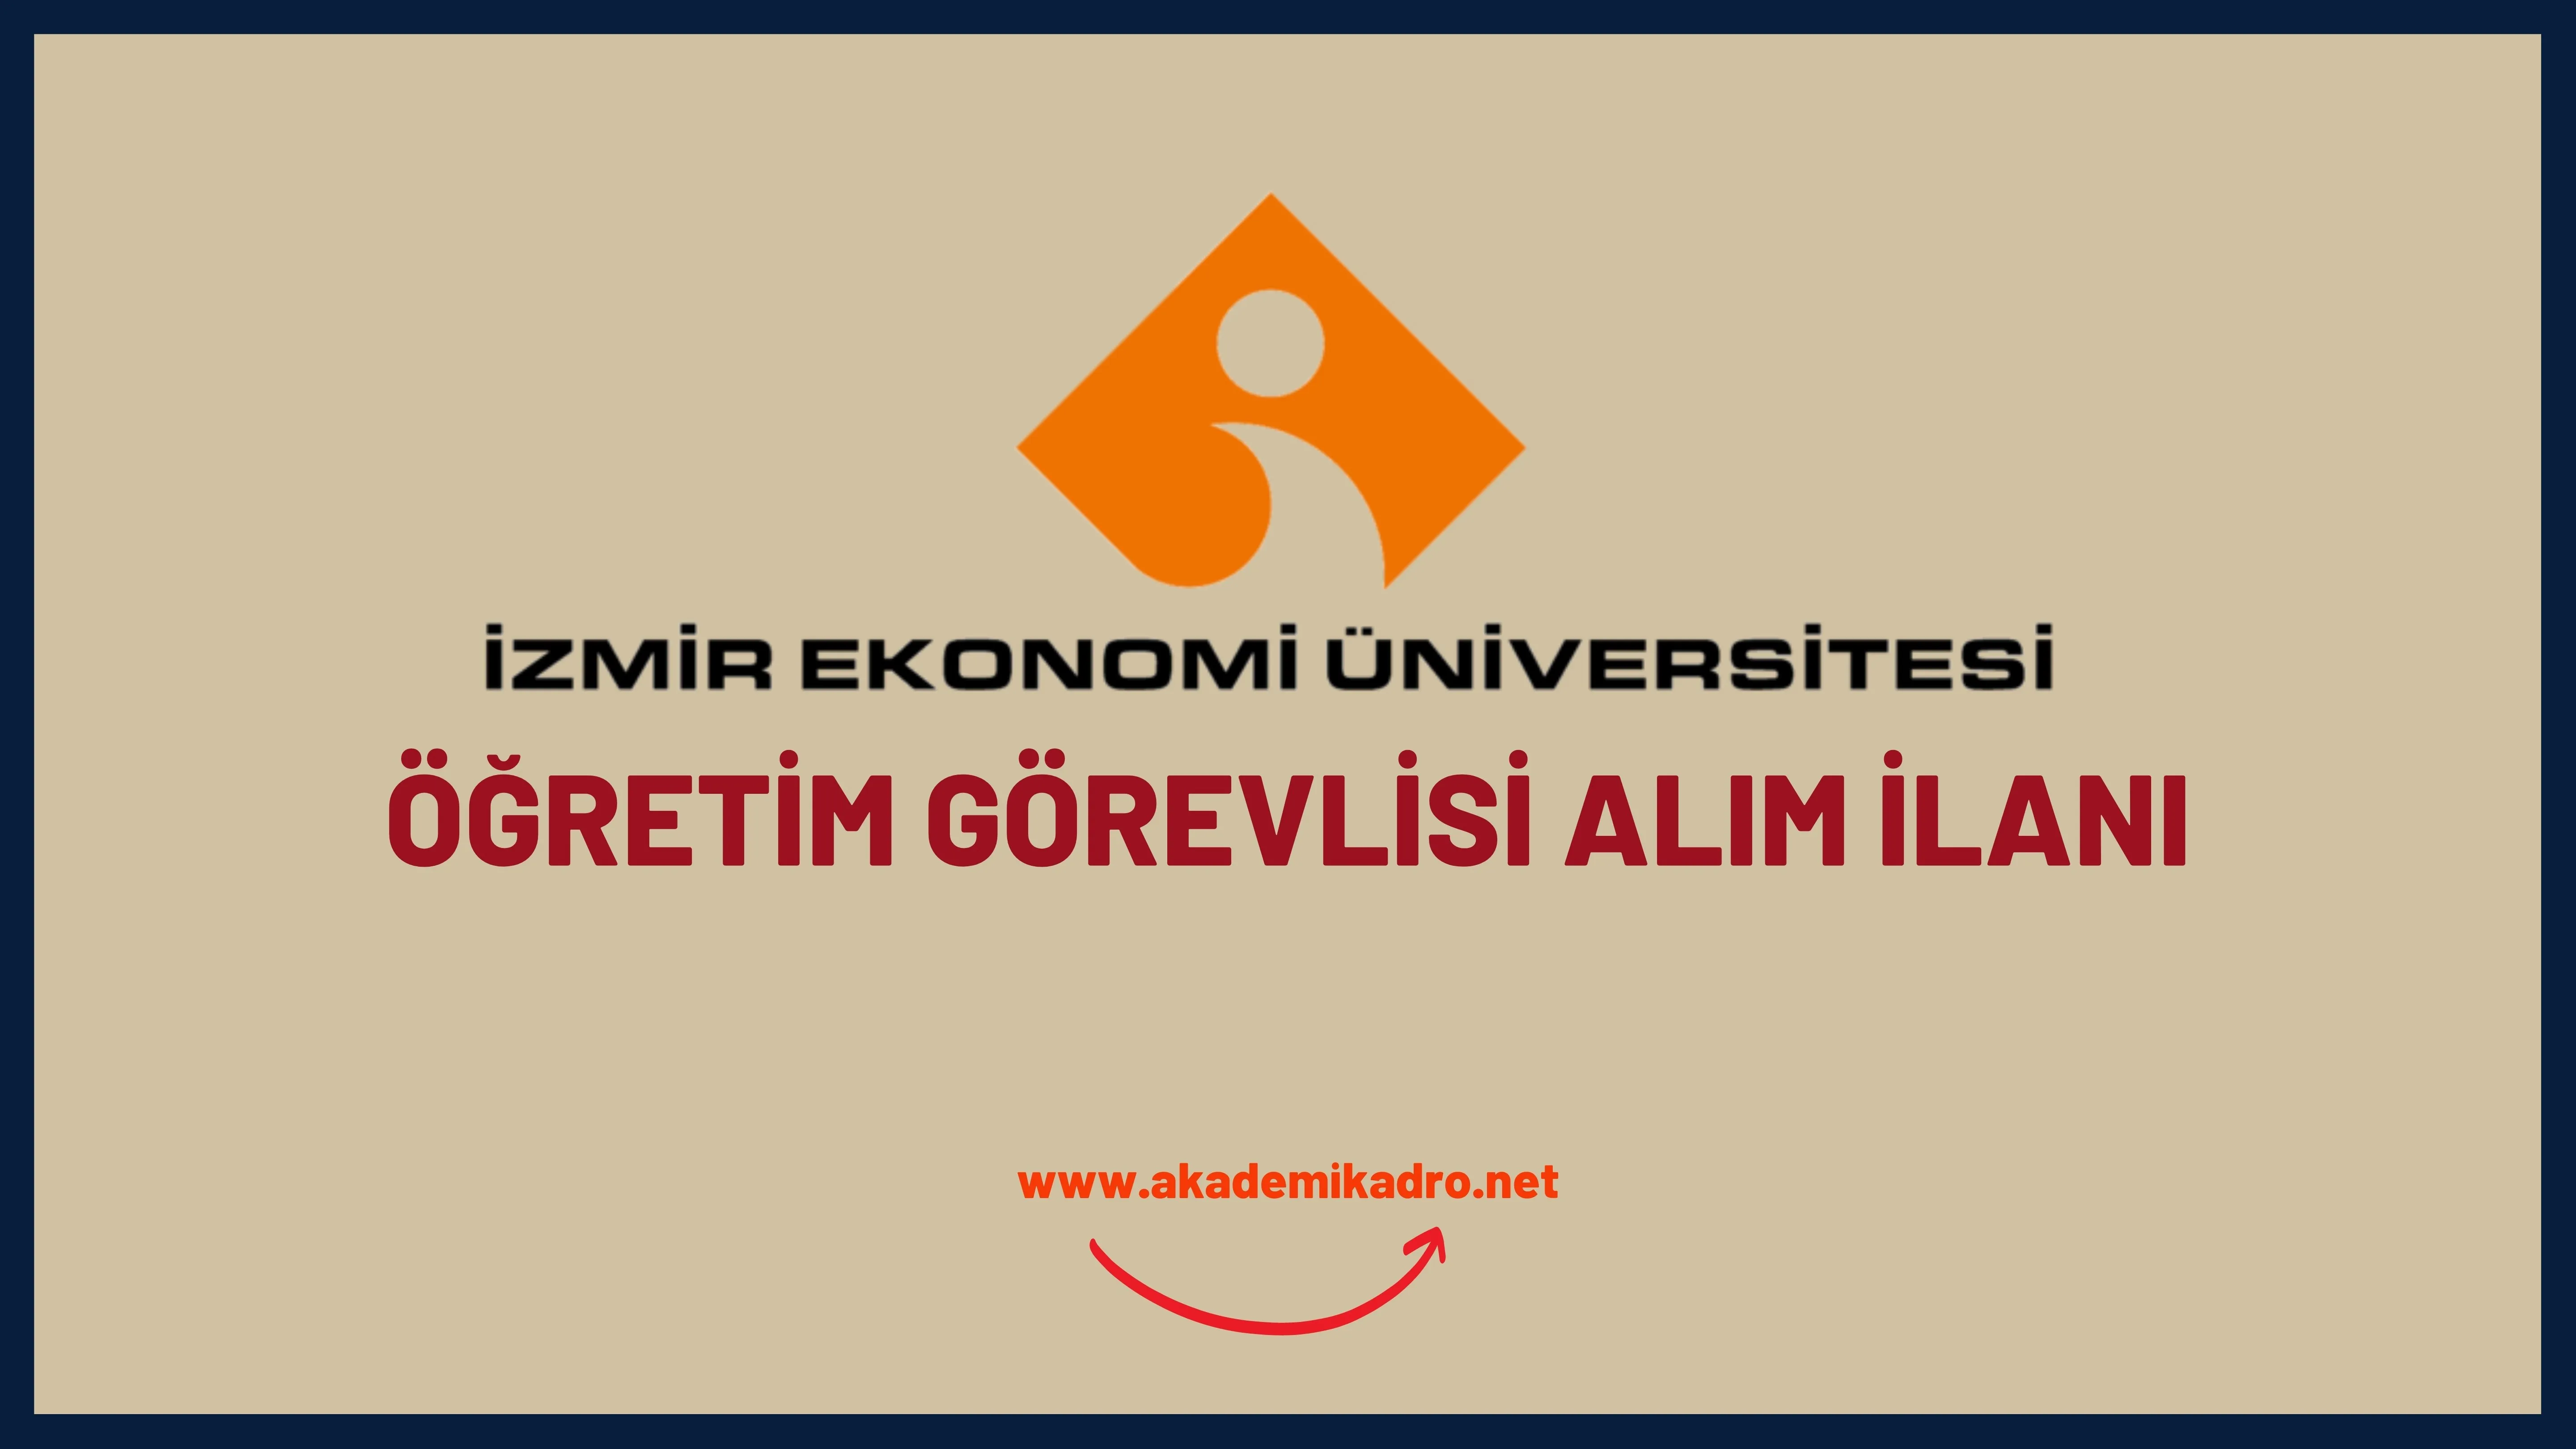 İzmir Ekonomi Üniversitesi Öğretim görevlisi alacak. Son başvuru tarihi 29 Mart 2023.